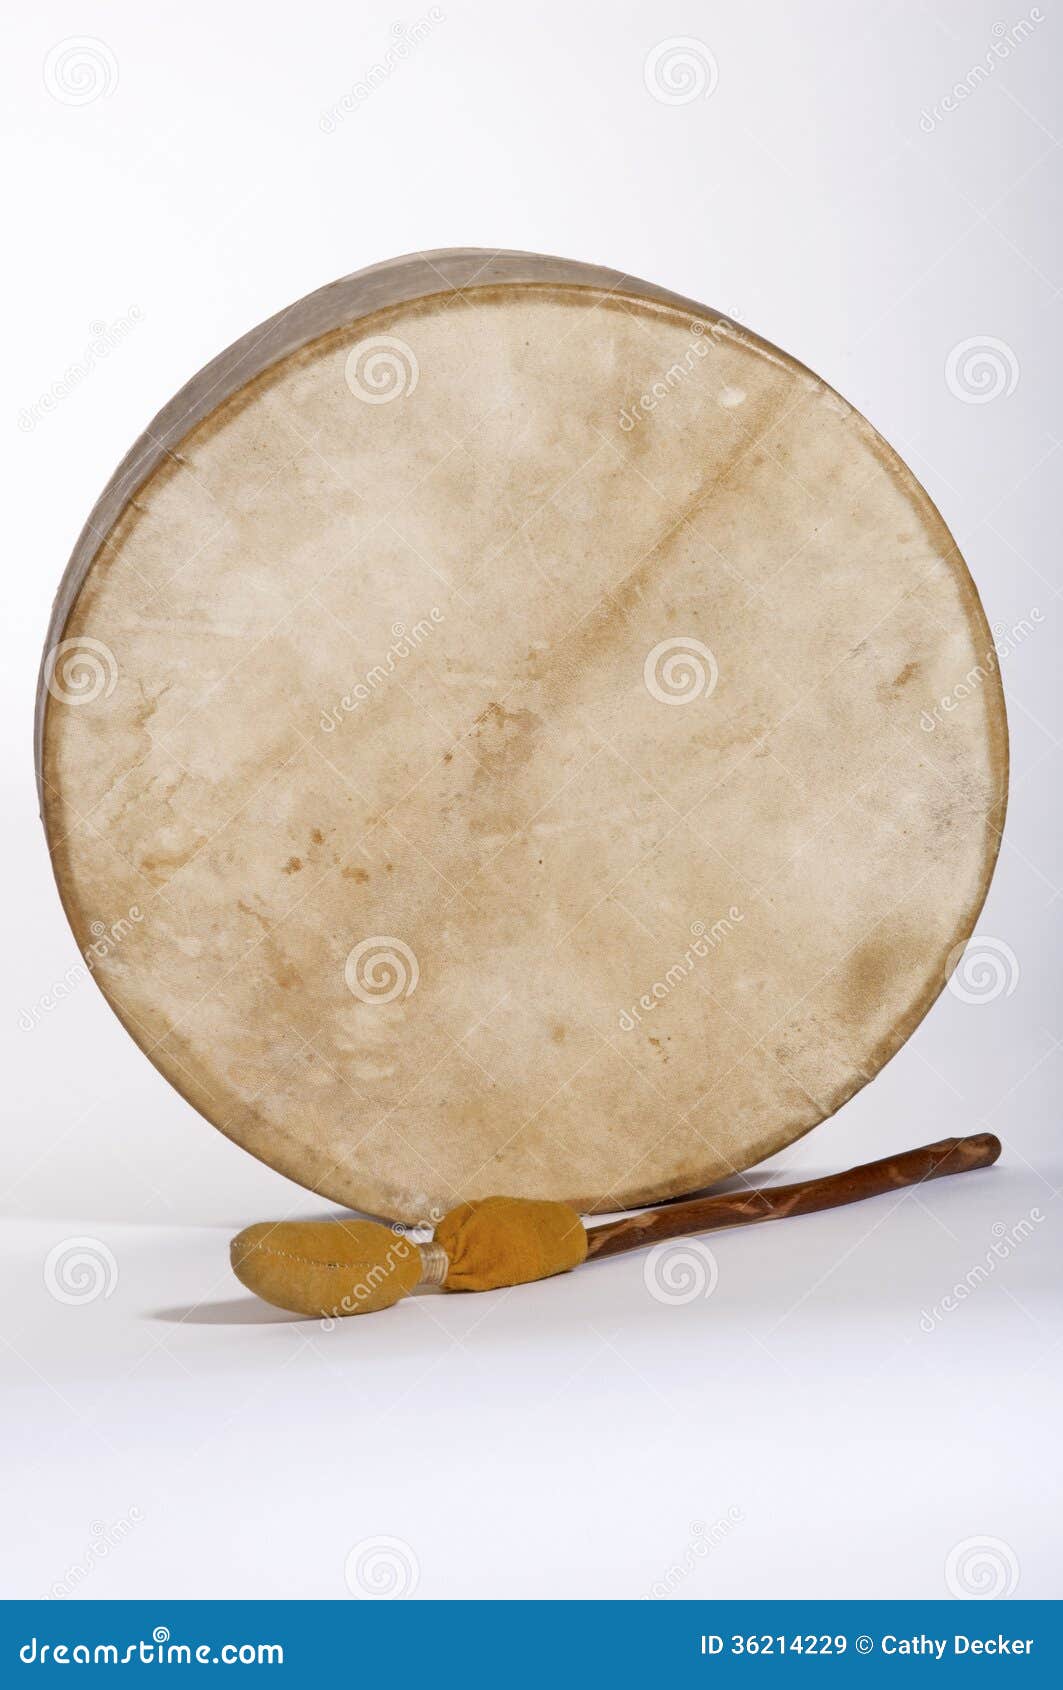 native american indian deerskin drum and drumstick